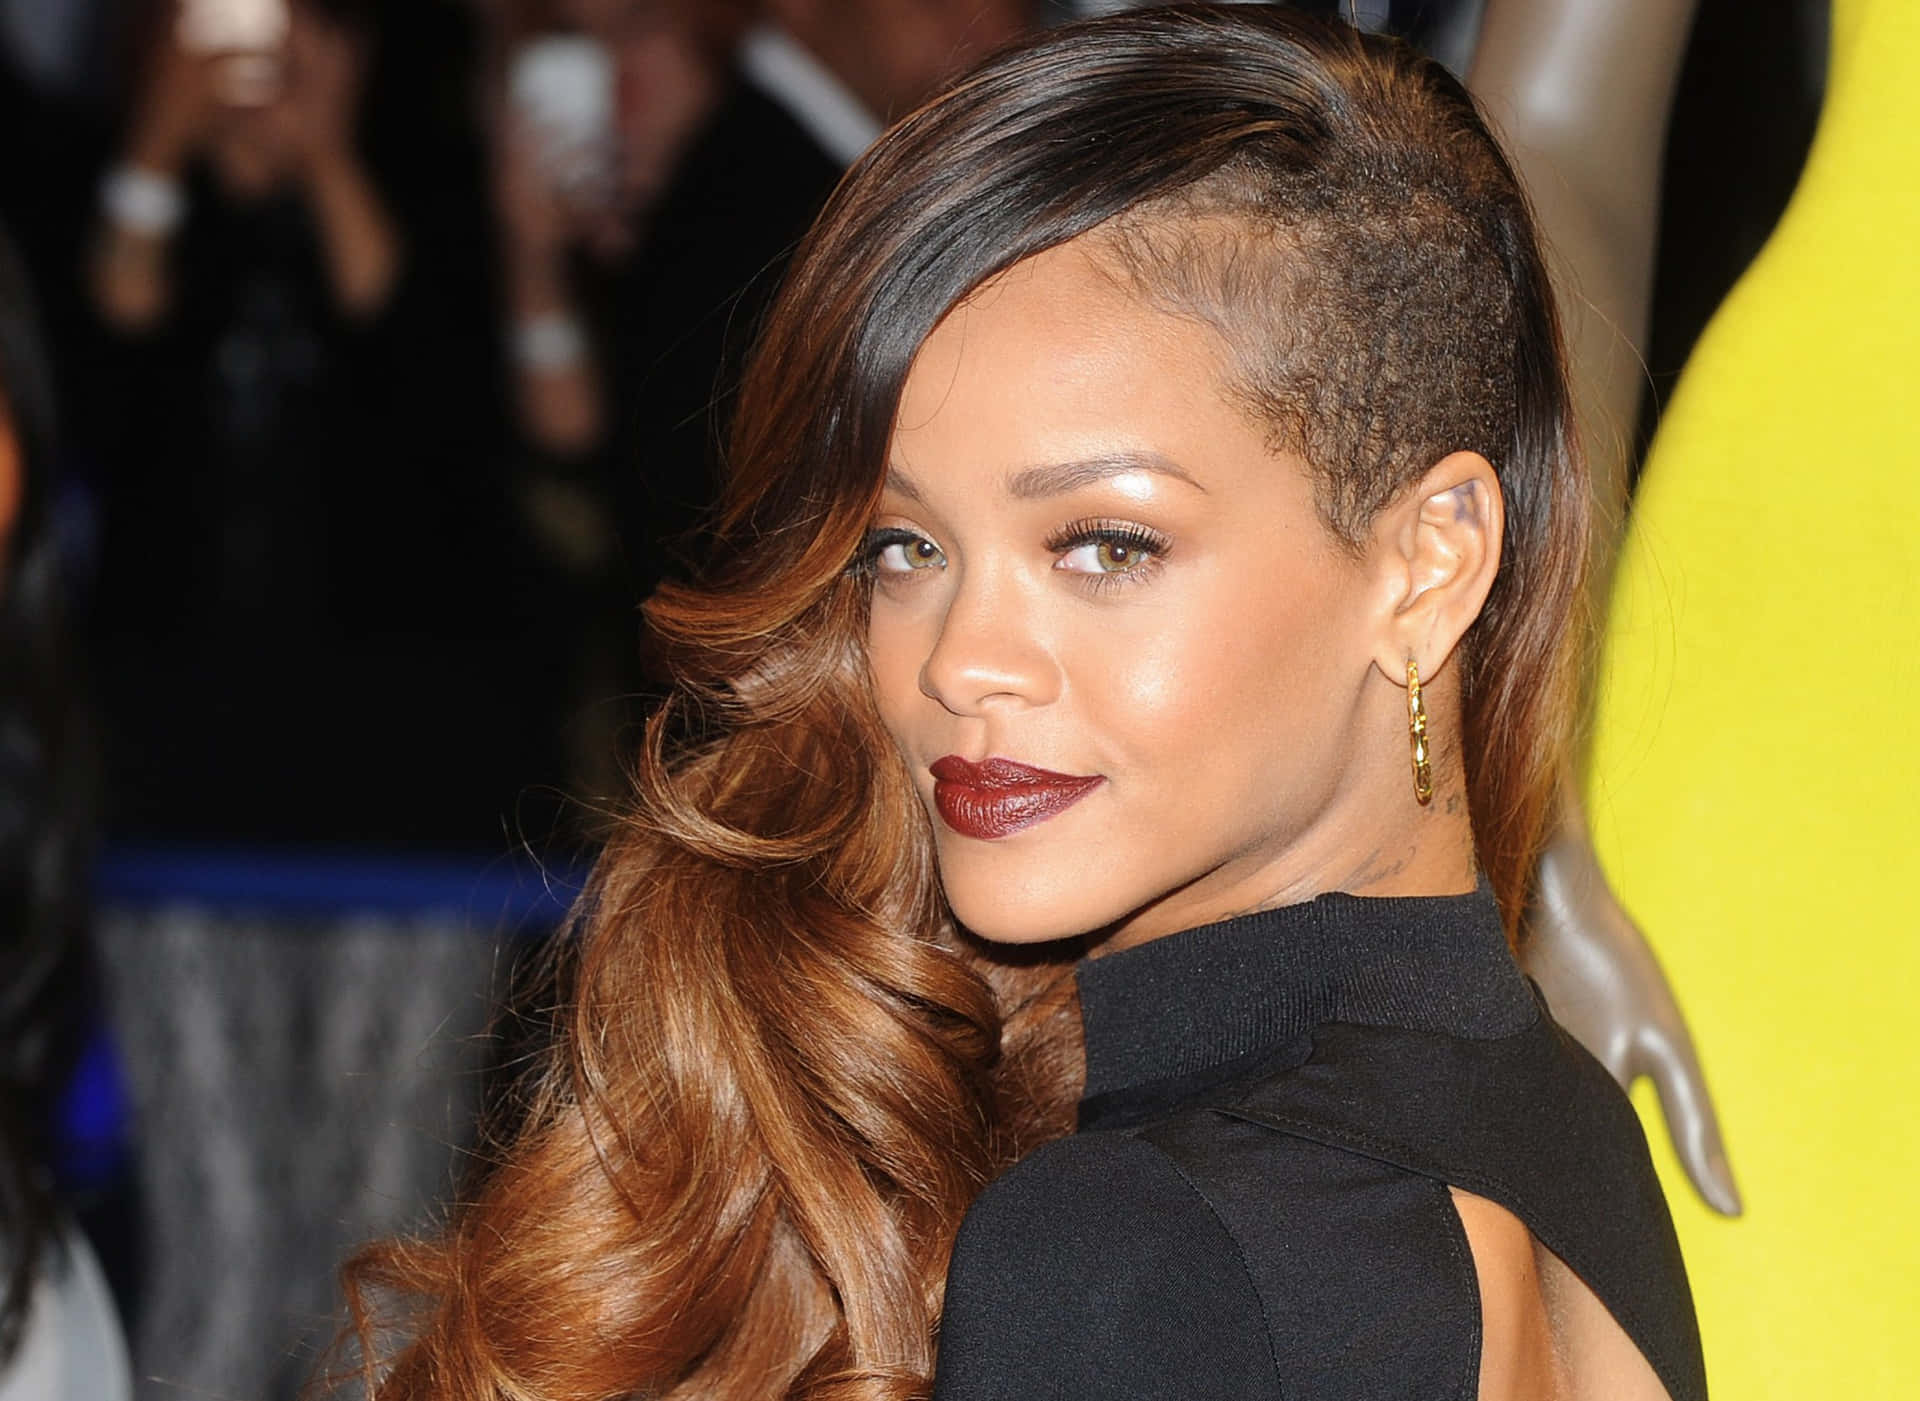 Rihannasfrisuren Für Die Mtv Awards